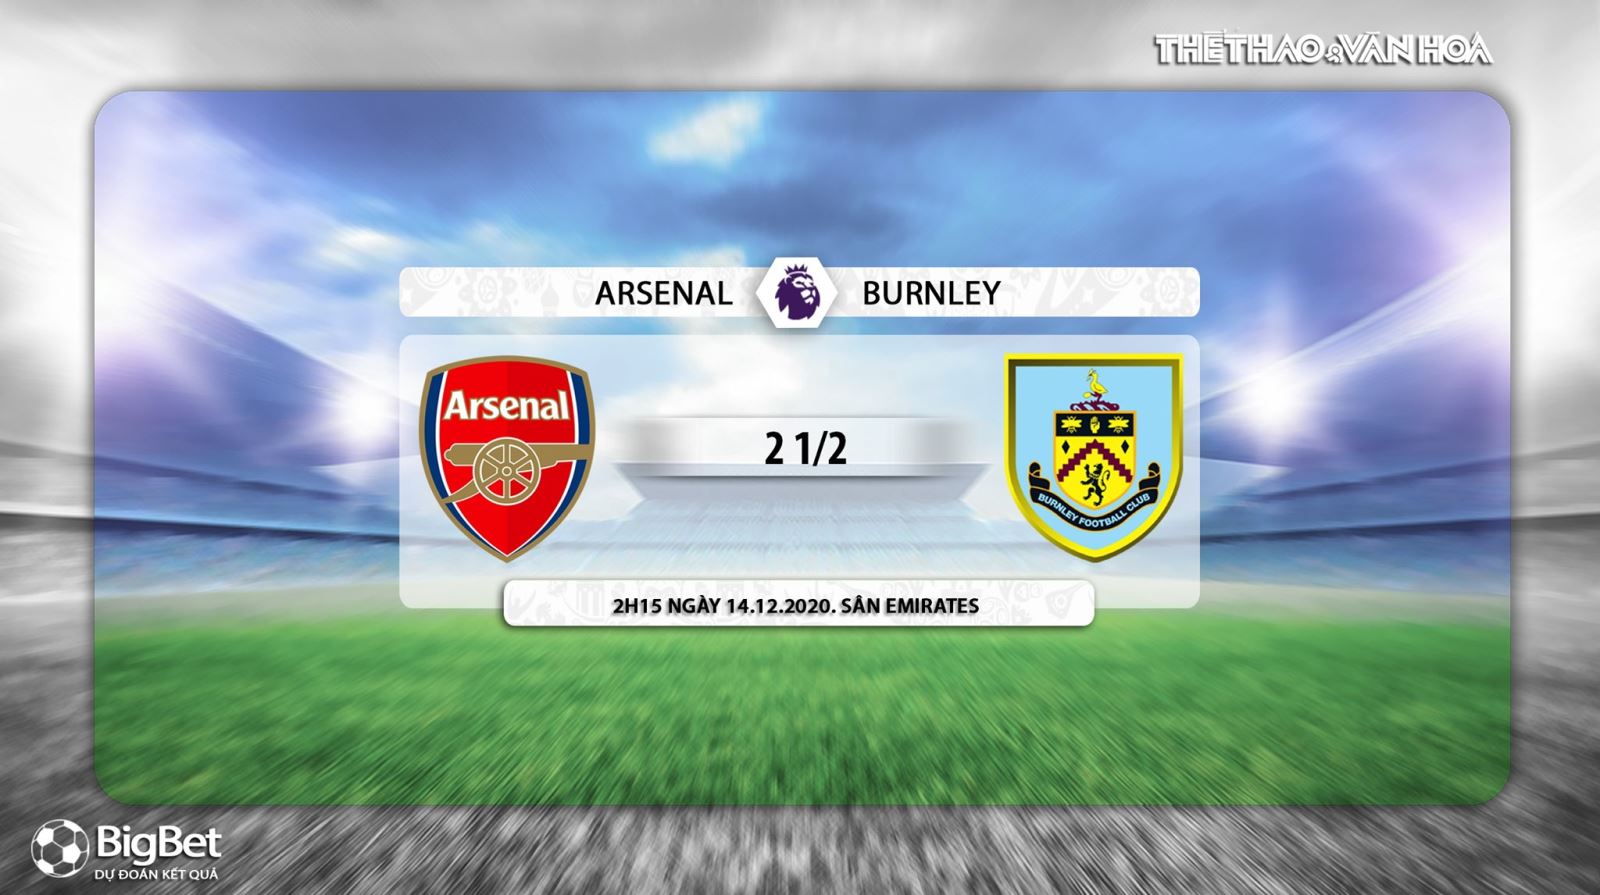 Keo nha cai, Nhận định kết quả, Arsenal vs Burnley, Trực tiếp bóng đá, K+PM, Ngoại hạng Anh vòng 12, nhận định bóng đá Arsenal đấu với Burnley, trực tiếp bóng đá Arsenal vs Burnley